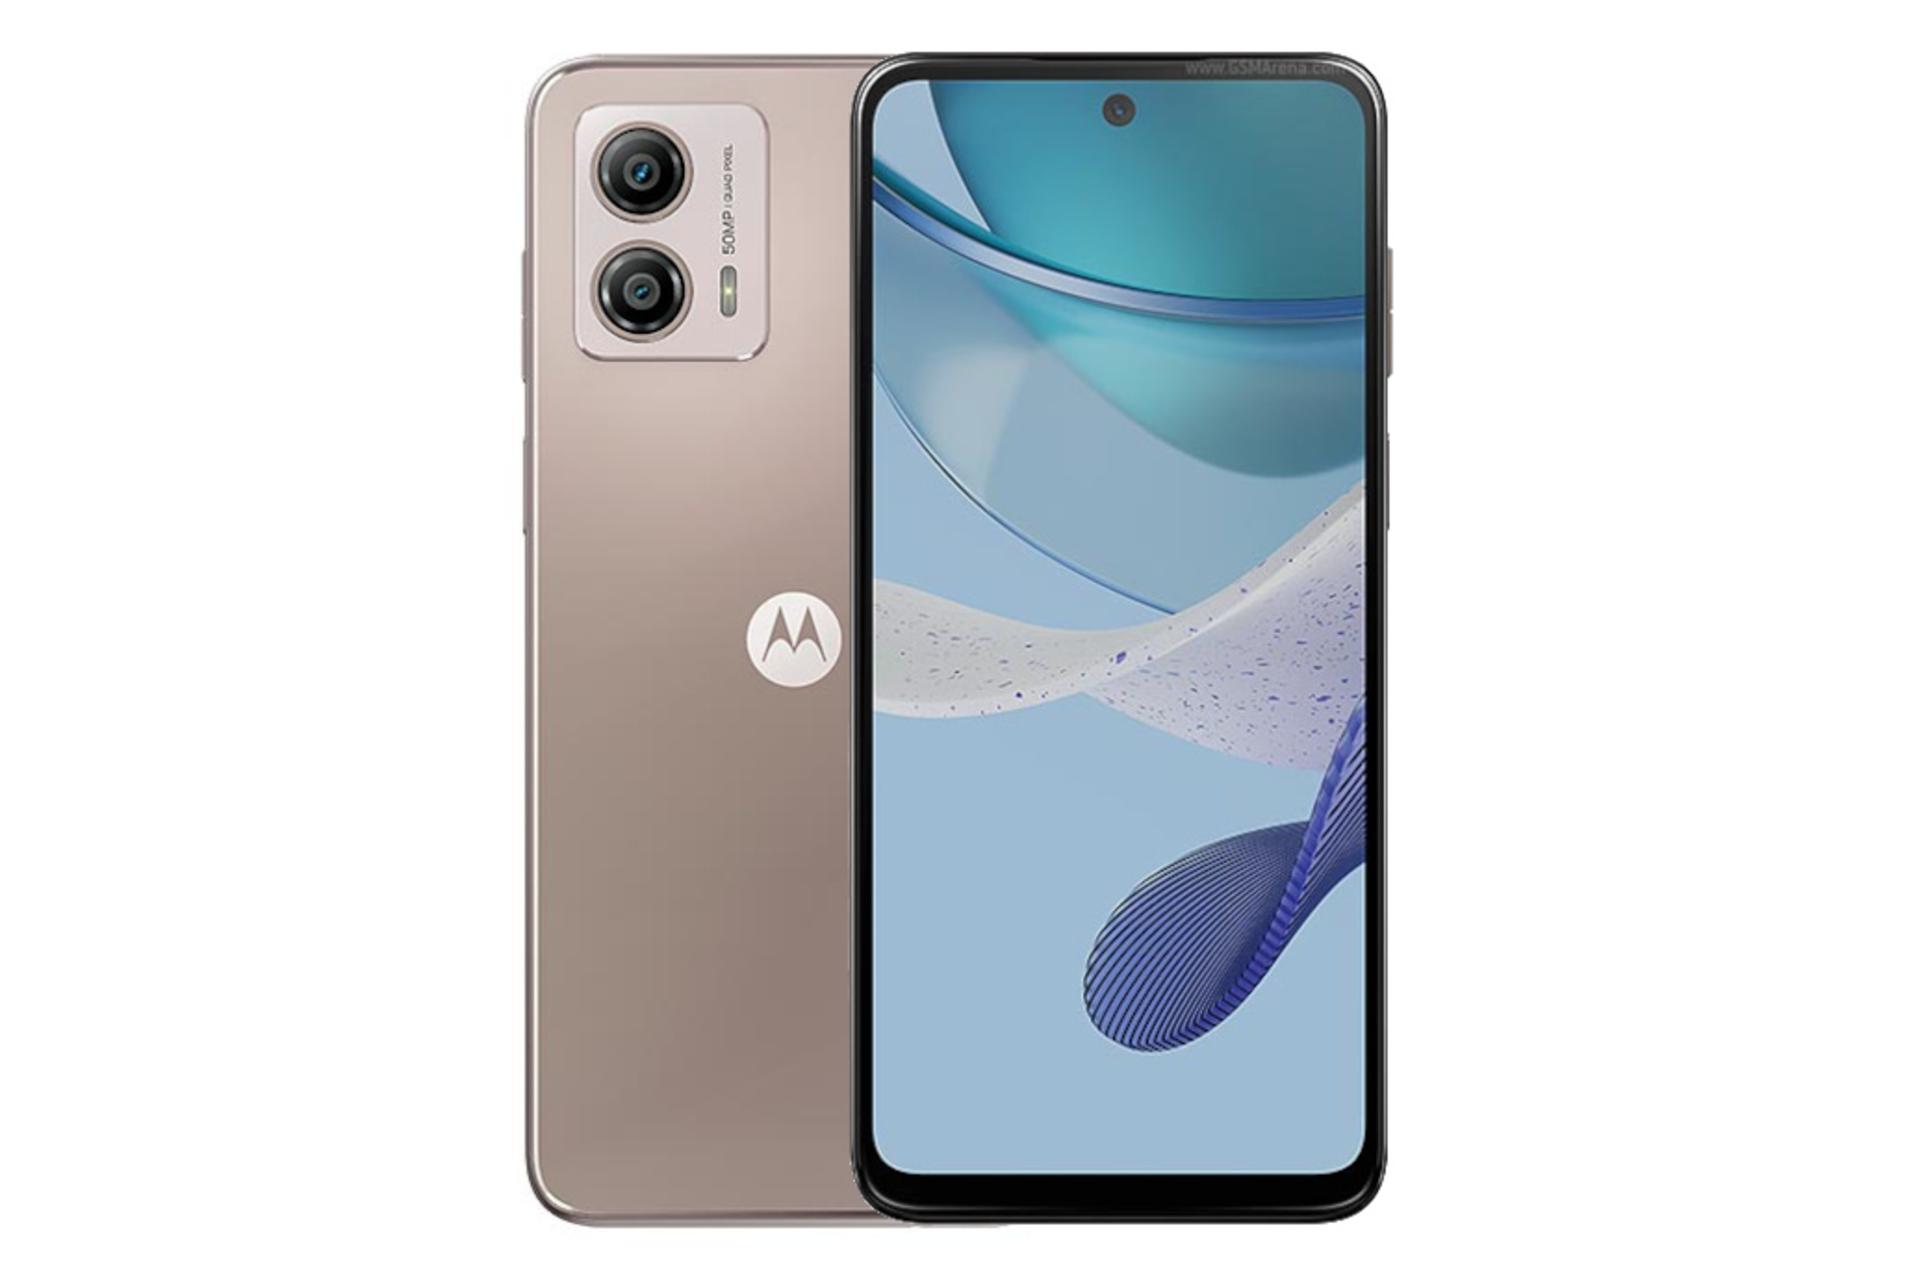 گوشی موبایل موتو G53 موتورولا / Motorola Moto G53 رزگلد